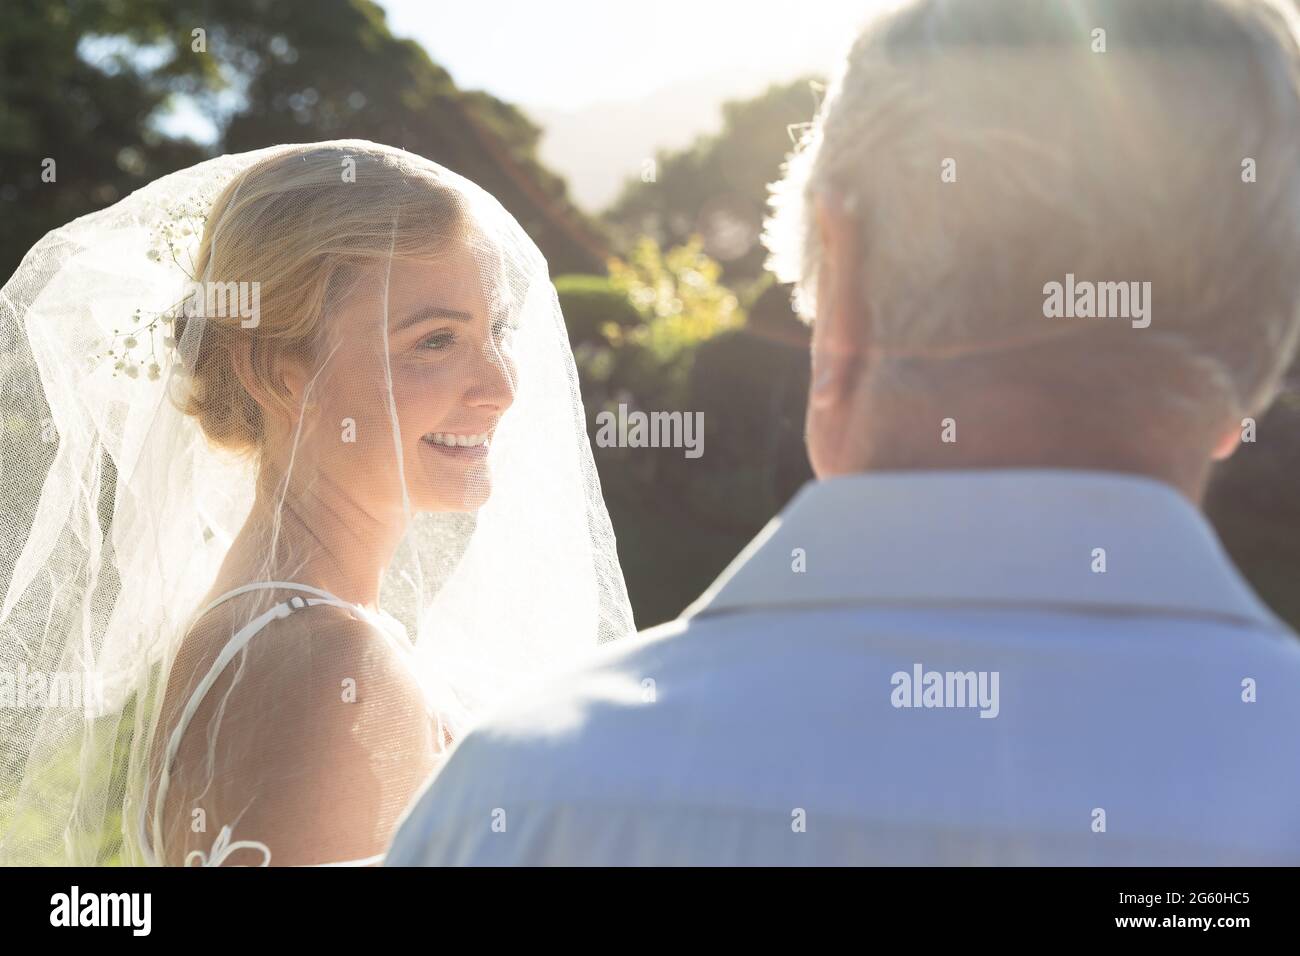 Glückliche kaukasische Braut lächelnd, heiraten und Hochzeitsoffizier Stockfoto